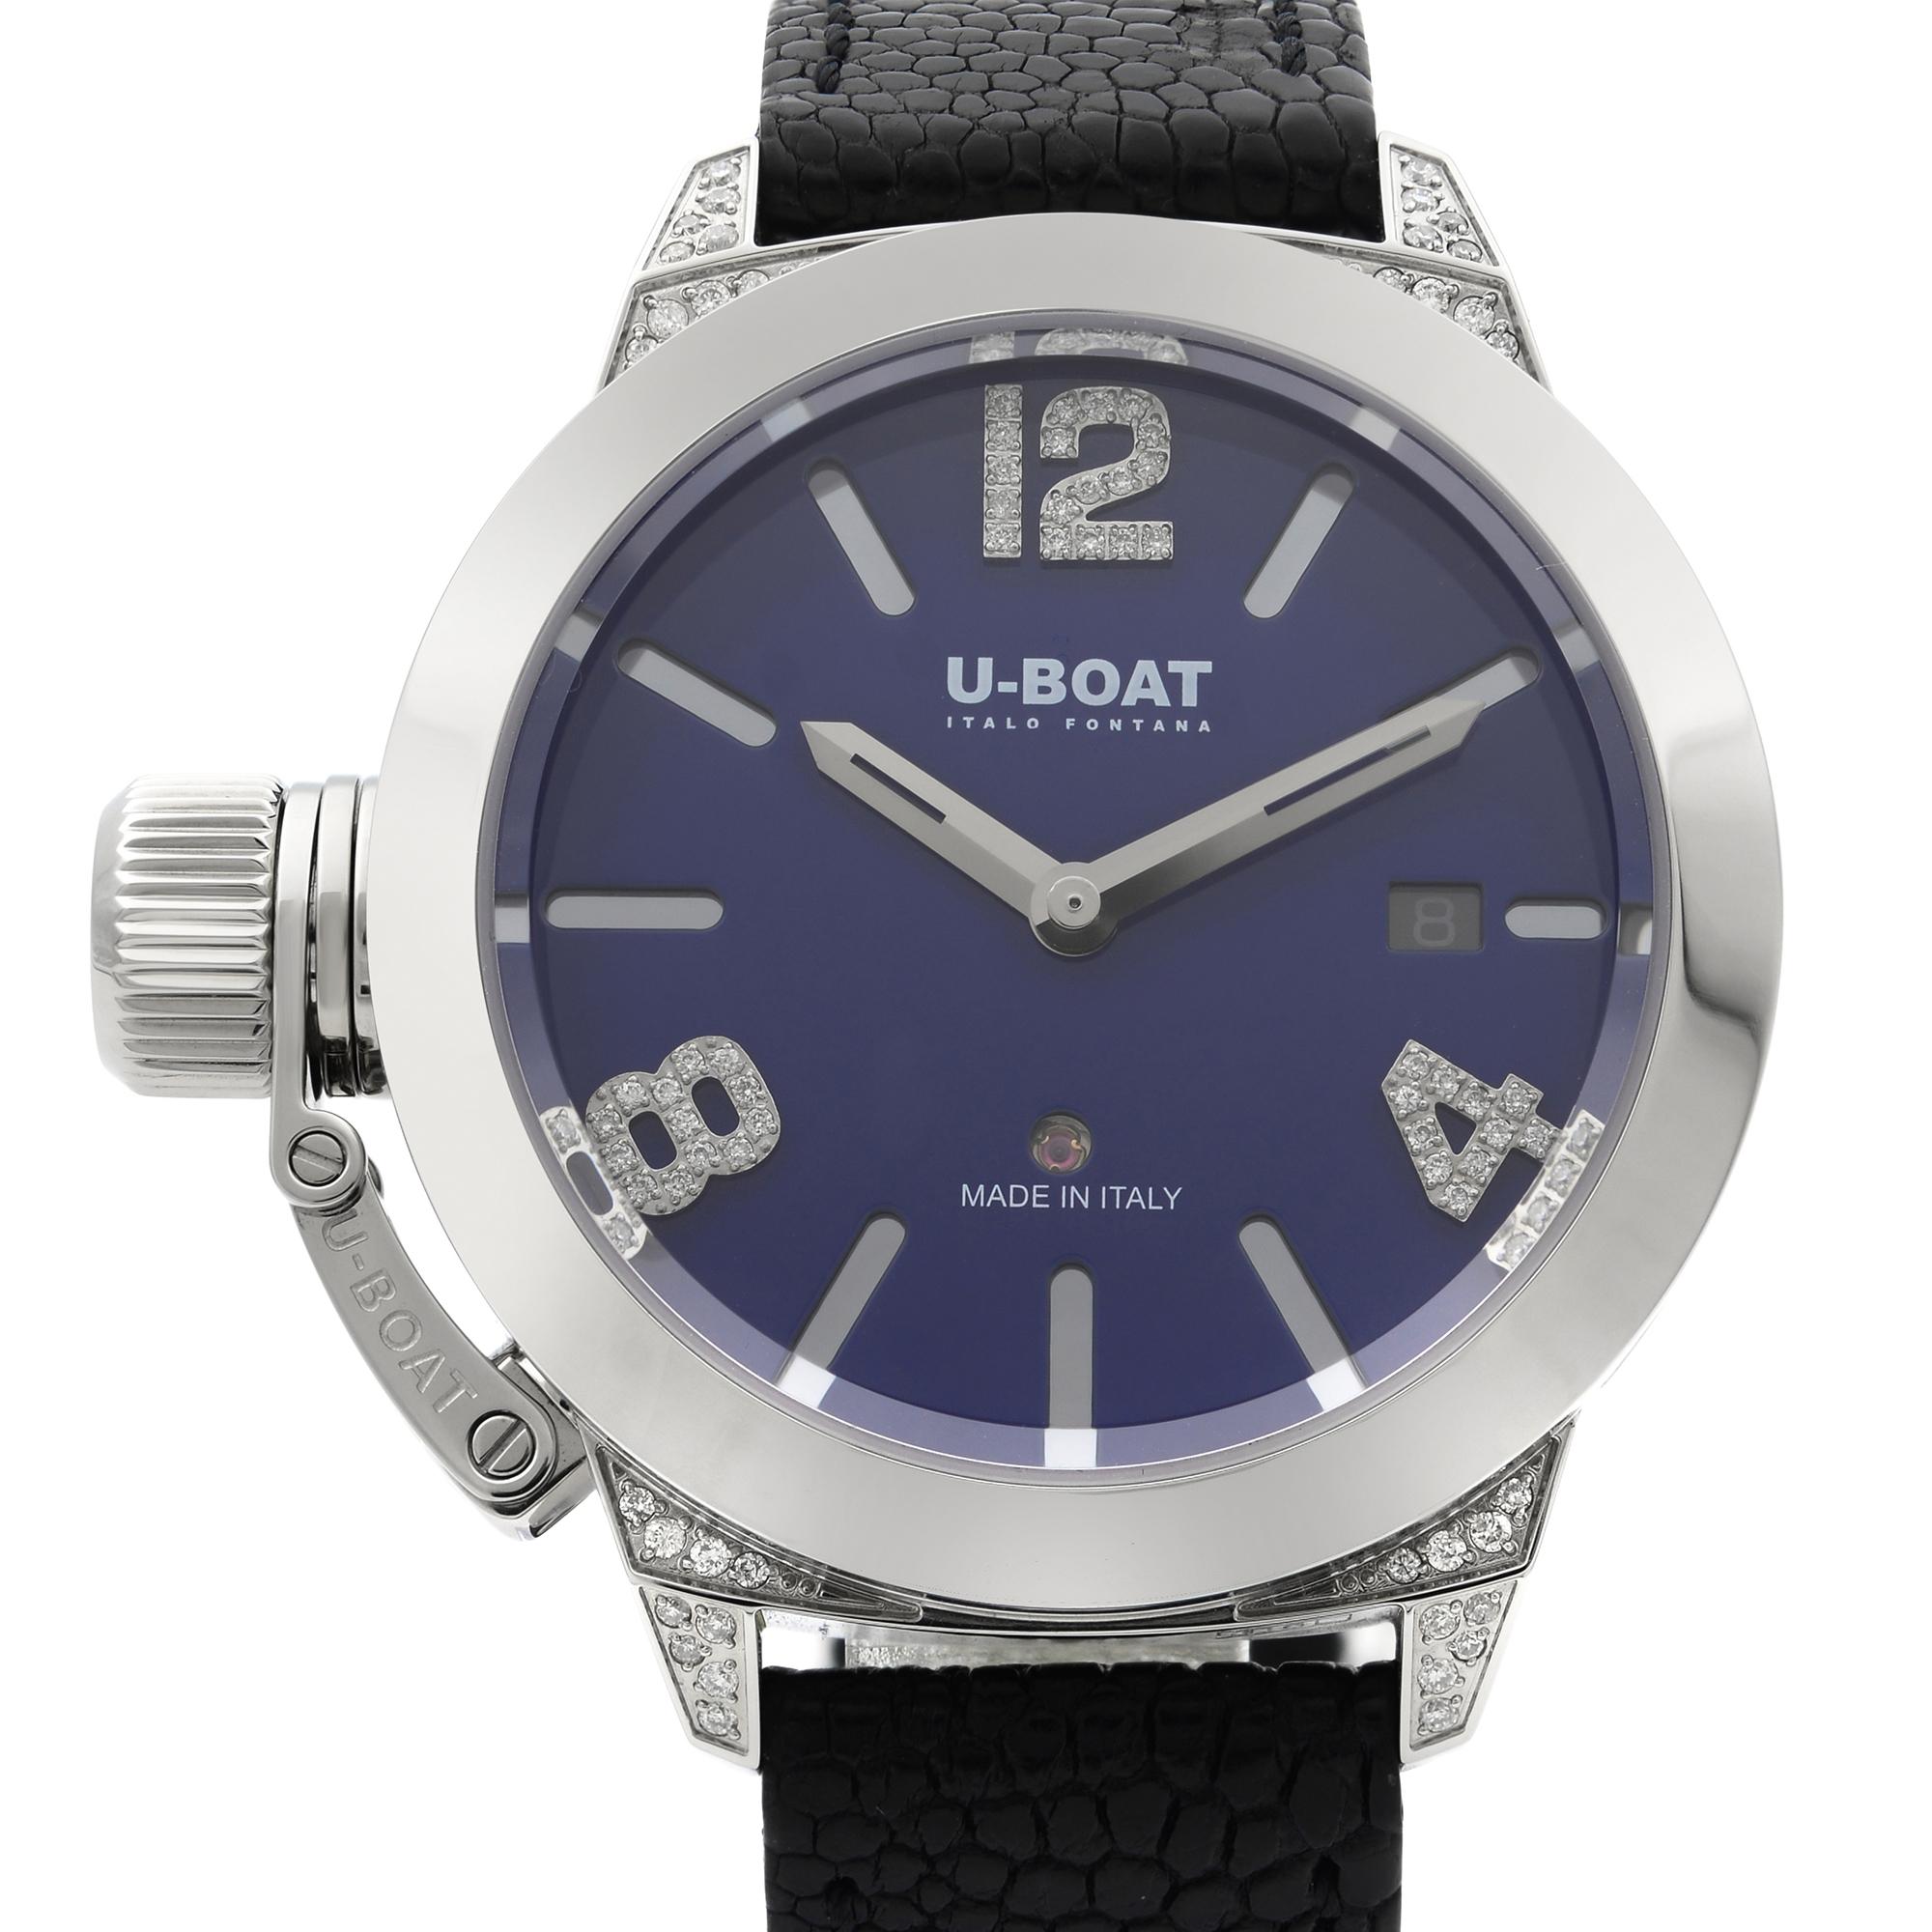 Cette U-Boat Classico 7077, qui n'a jamais été portée, est une magnifique montre pour homme qui est animée par un mouvement mécanique (automatique) logé dans un boîtier en acier inoxydable. Elle présente un visage de forme ronde, un indicateur de